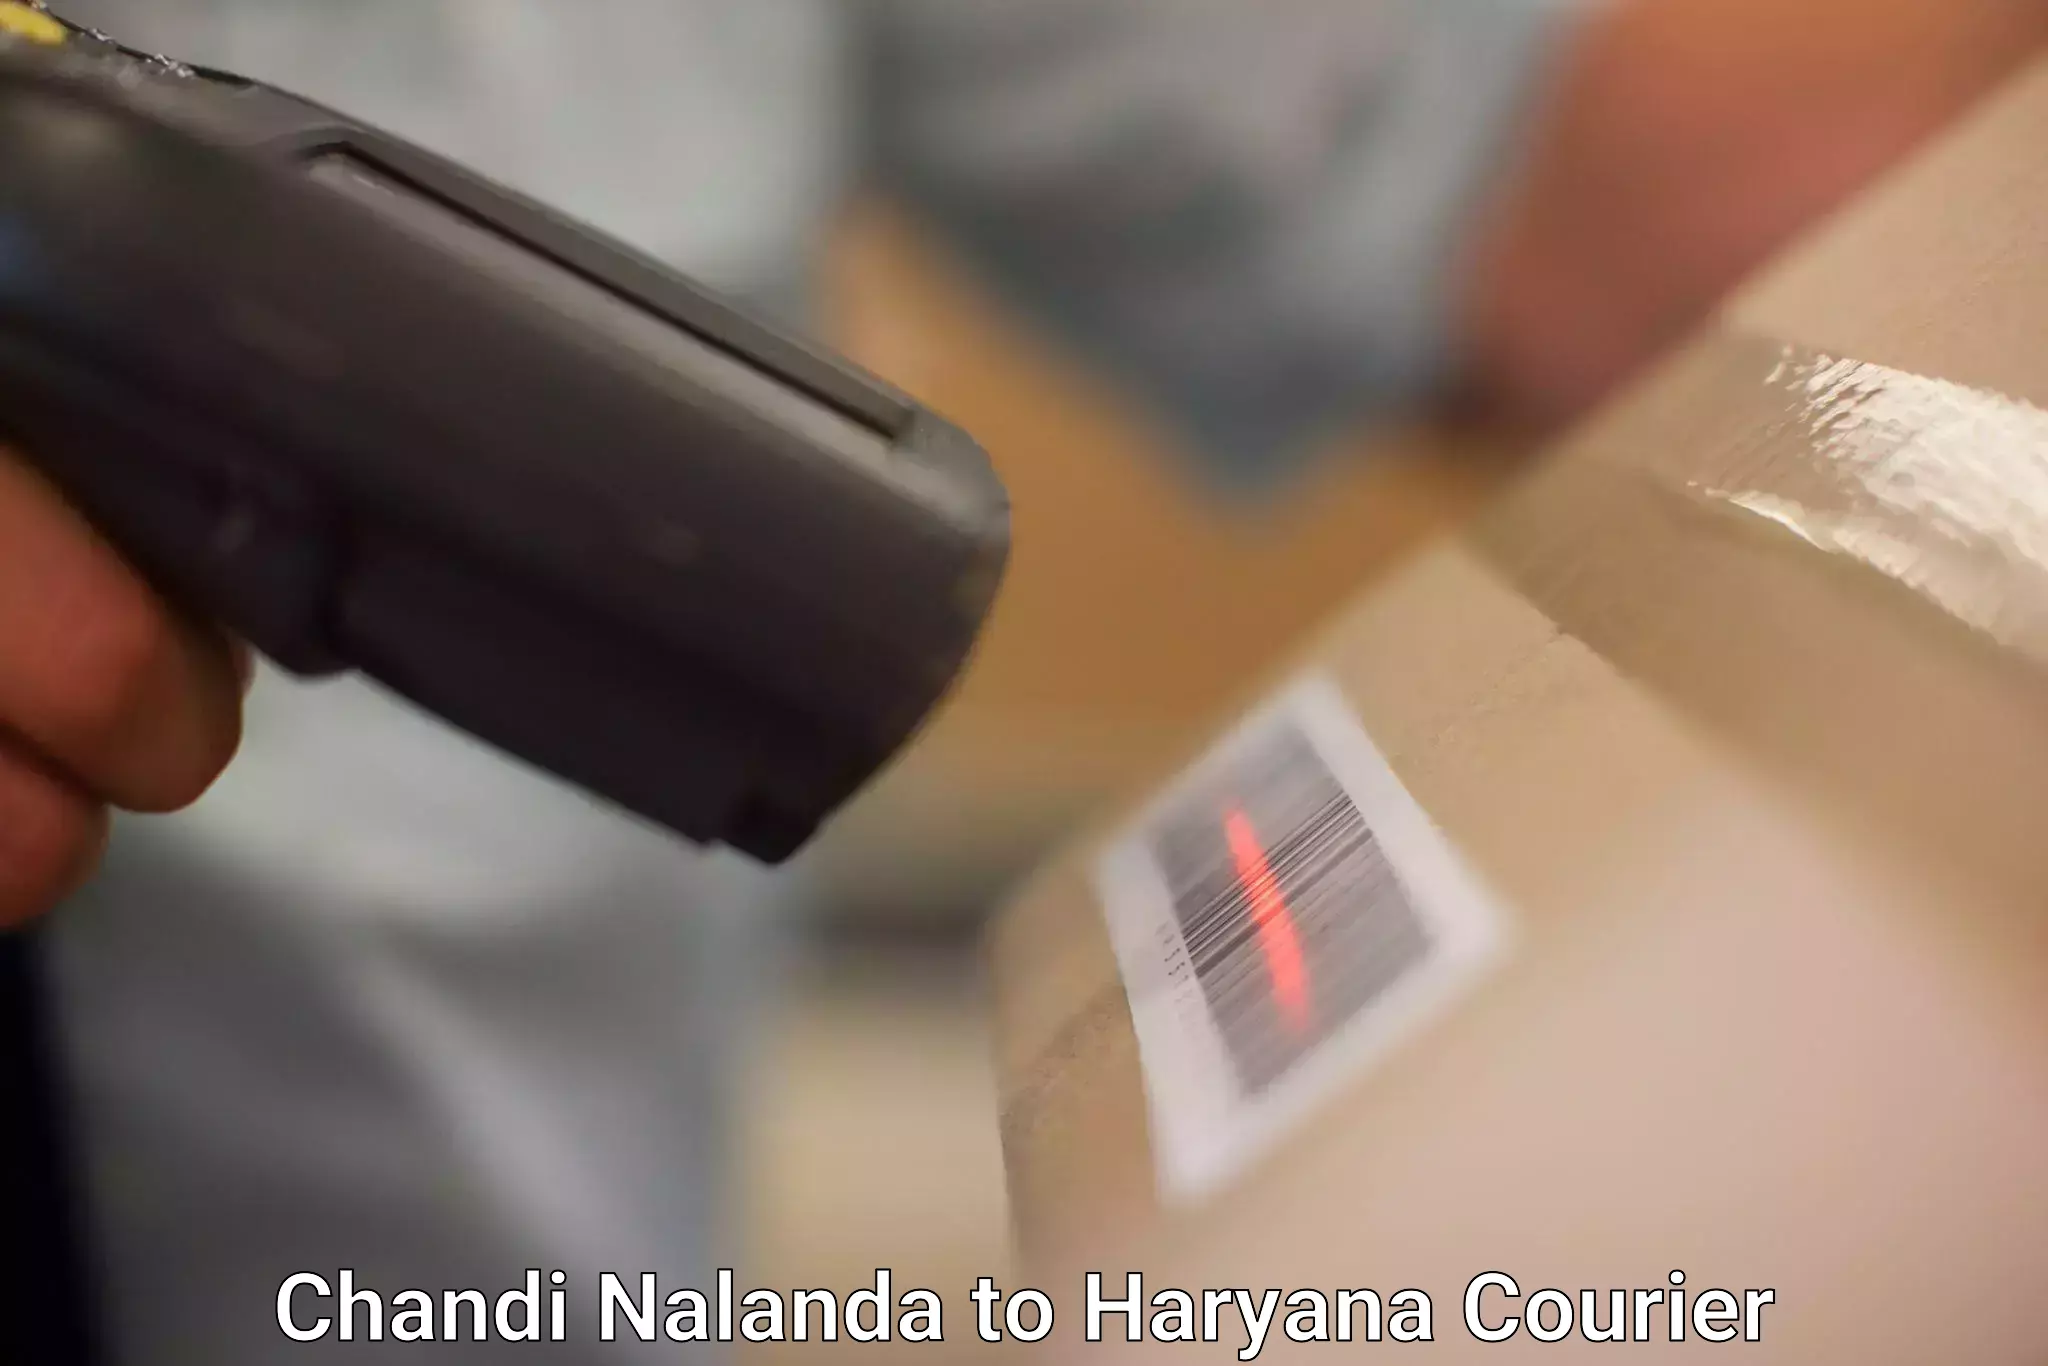 International parcel service Chandi Nalanda to Bhiwani